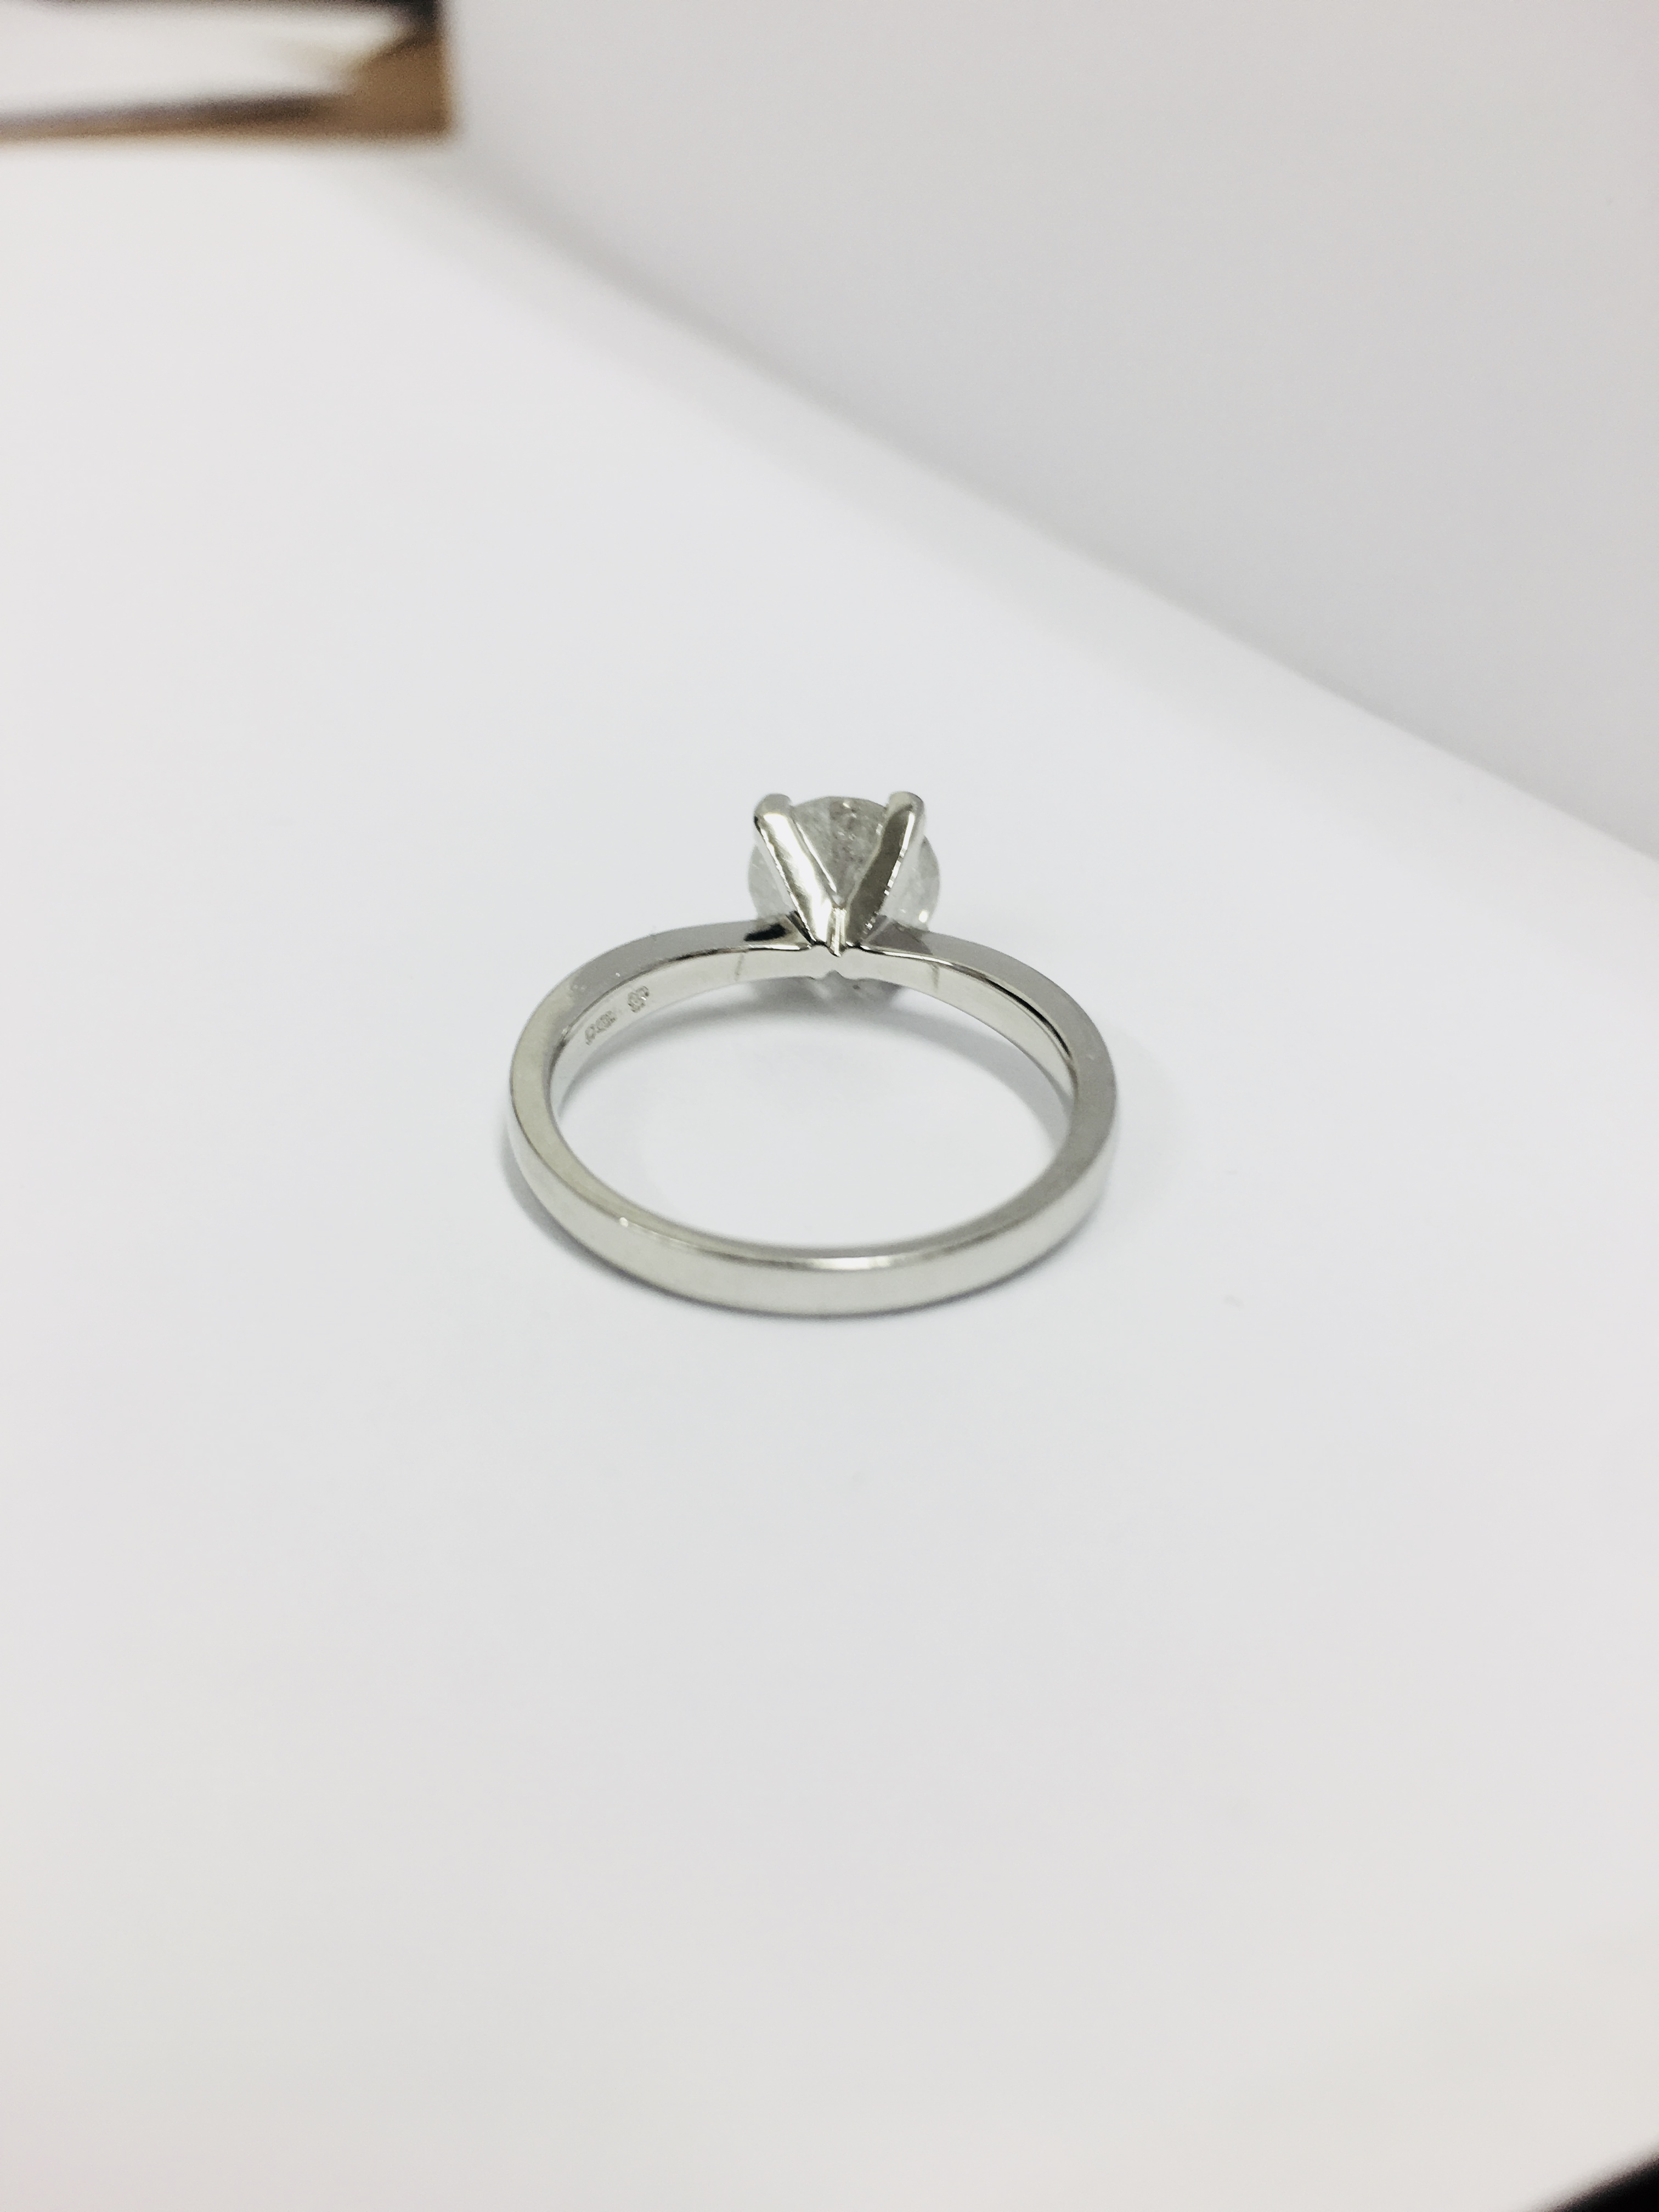 2.08ct diamond solitaire ring set in platinum - Image 40 of 48